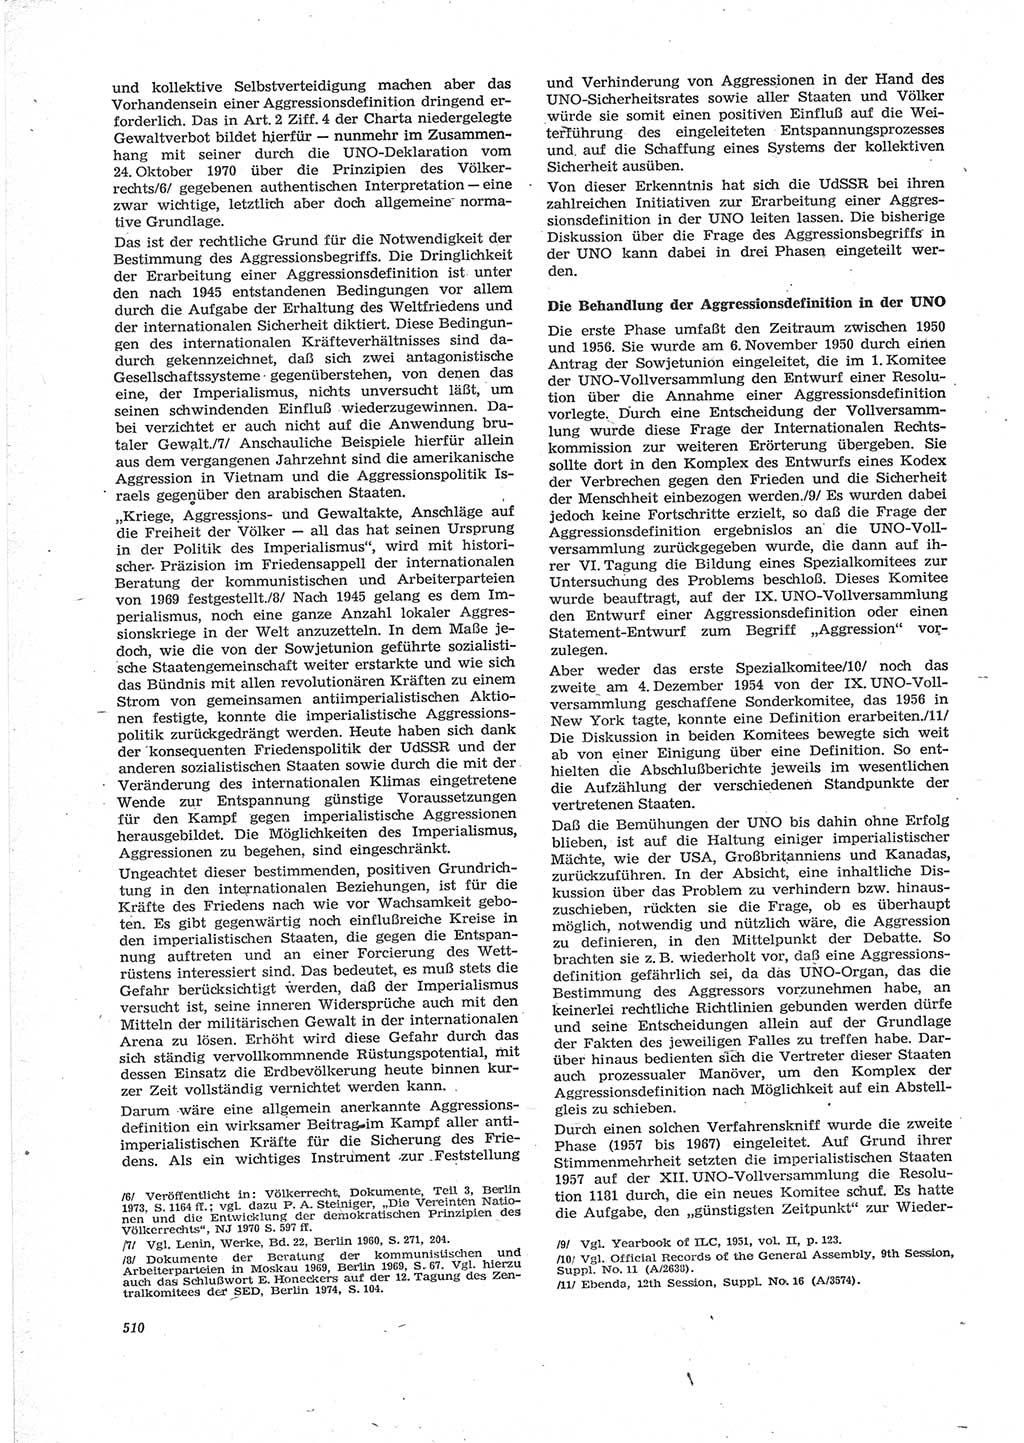 Neue Justiz (NJ), Zeitschrift für Recht und Rechtswissenschaft [Deutsche Demokratische Republik (DDR)], 28. Jahrgang 1974, Seite 510 (NJ DDR 1974, S. 510)